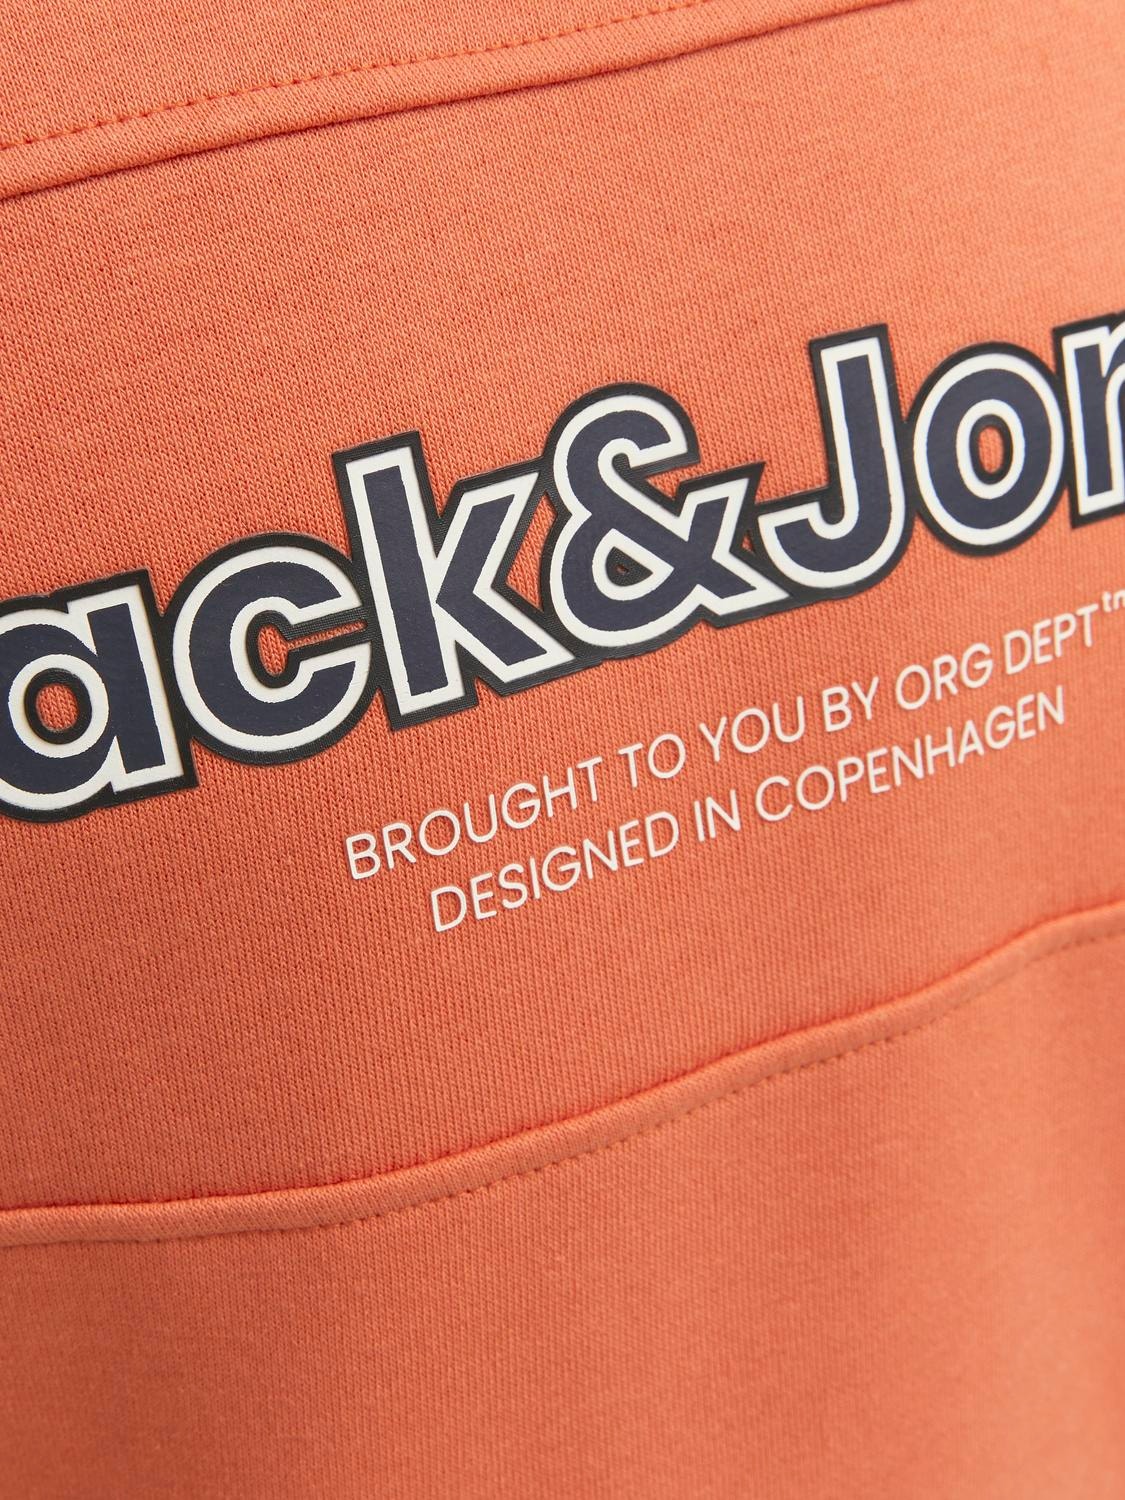 Jack & Jones Sudadera con cuello redondo Logotipo Para chicos -Ginger - 12247690